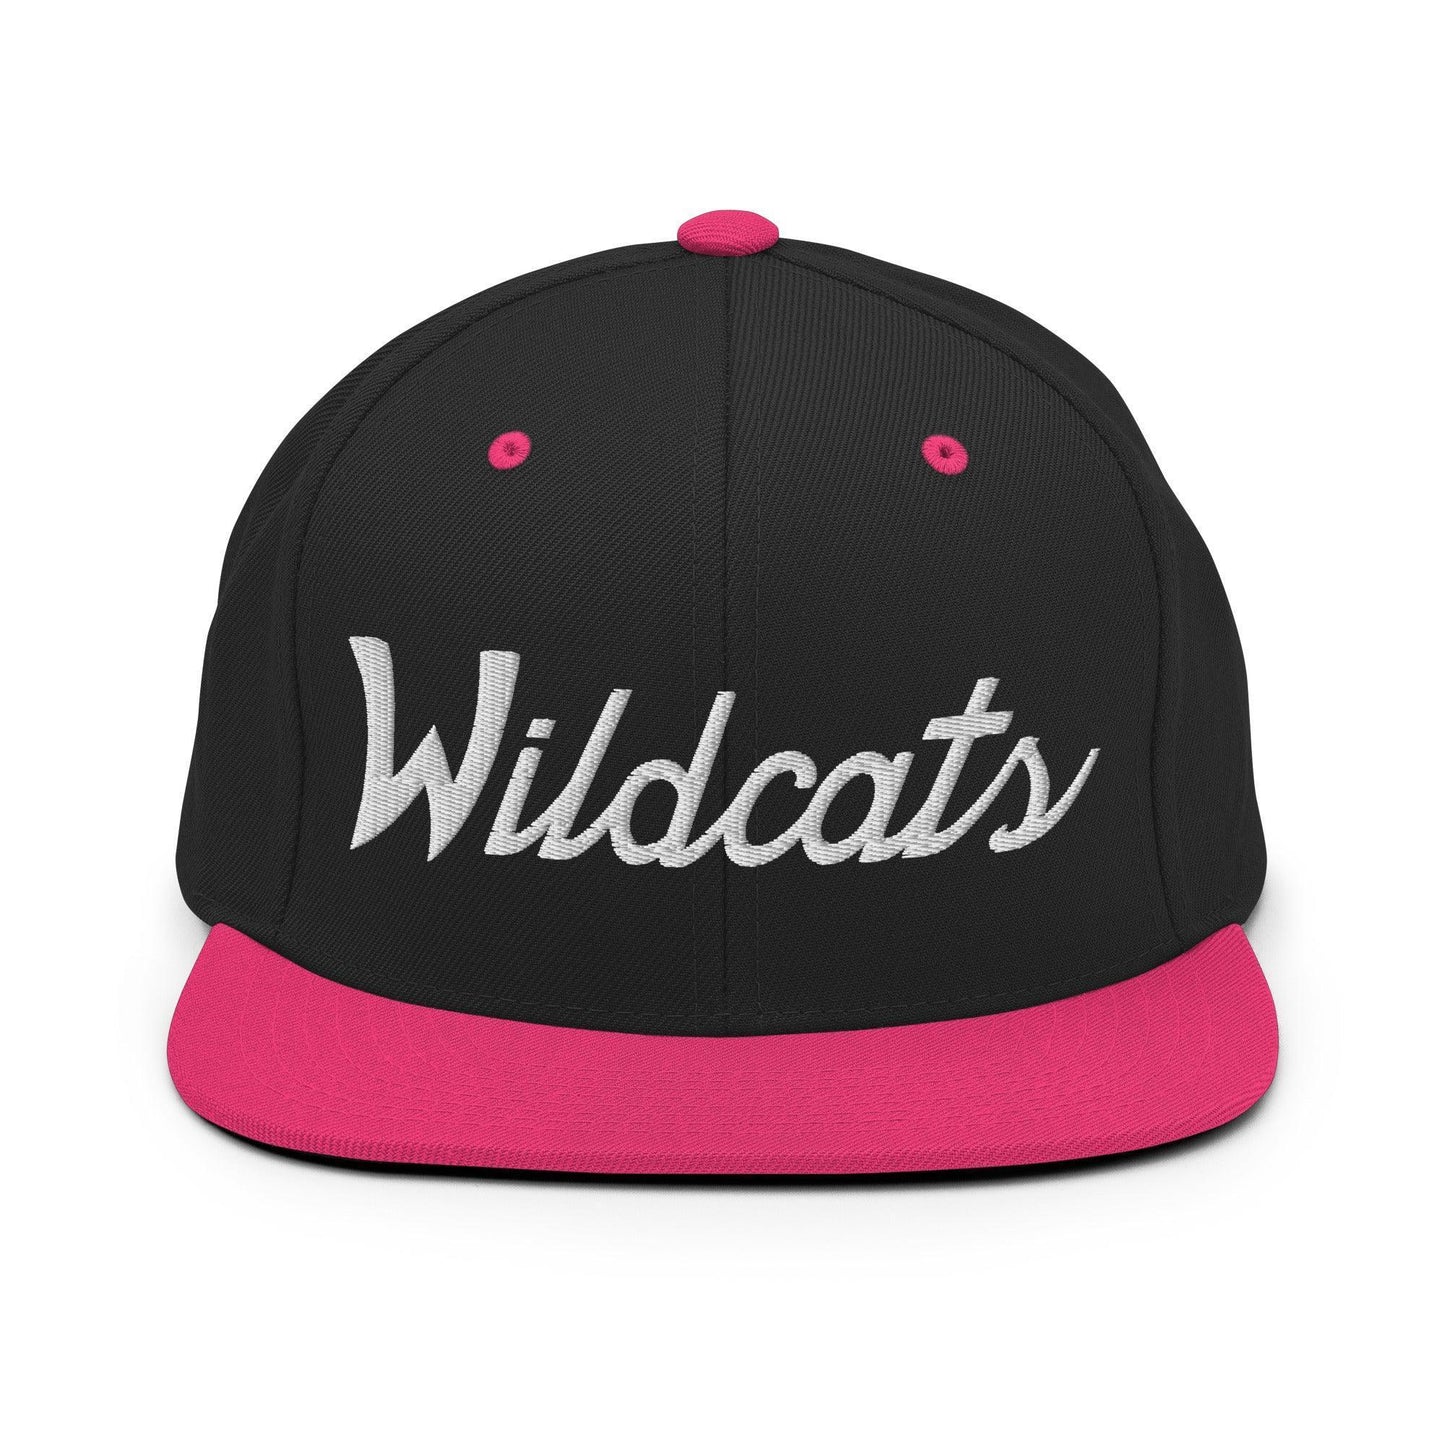 Wildcats School Mascot Script Snapback Hat Black/ Neon Pink